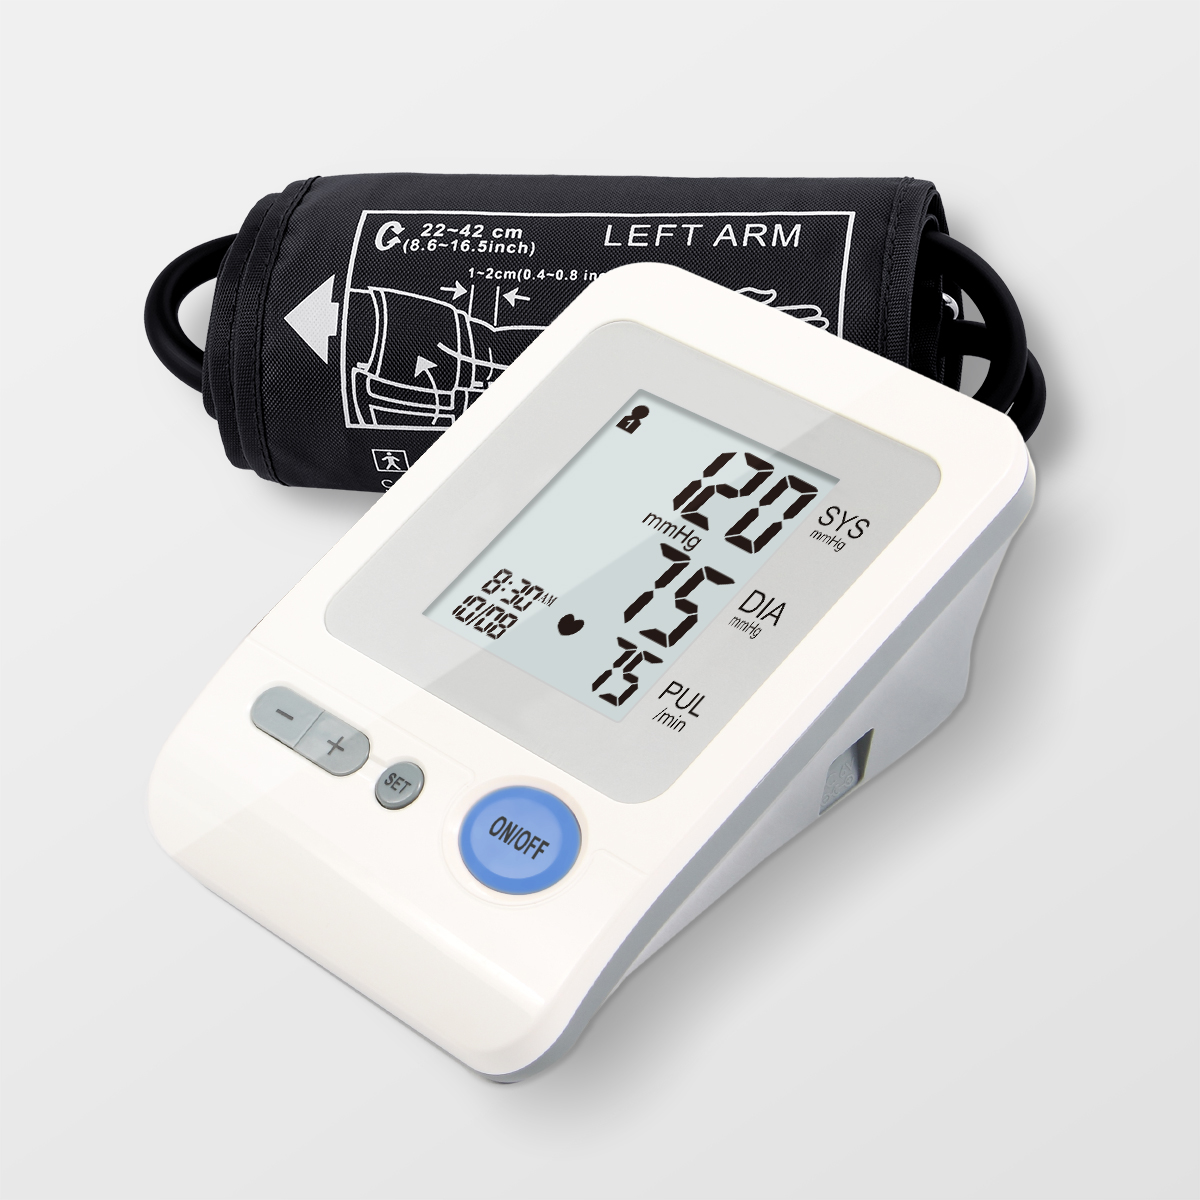 FDA chuan Upper Arm High Blood Checking Machine Blood Pressure Monitor a pawmpui